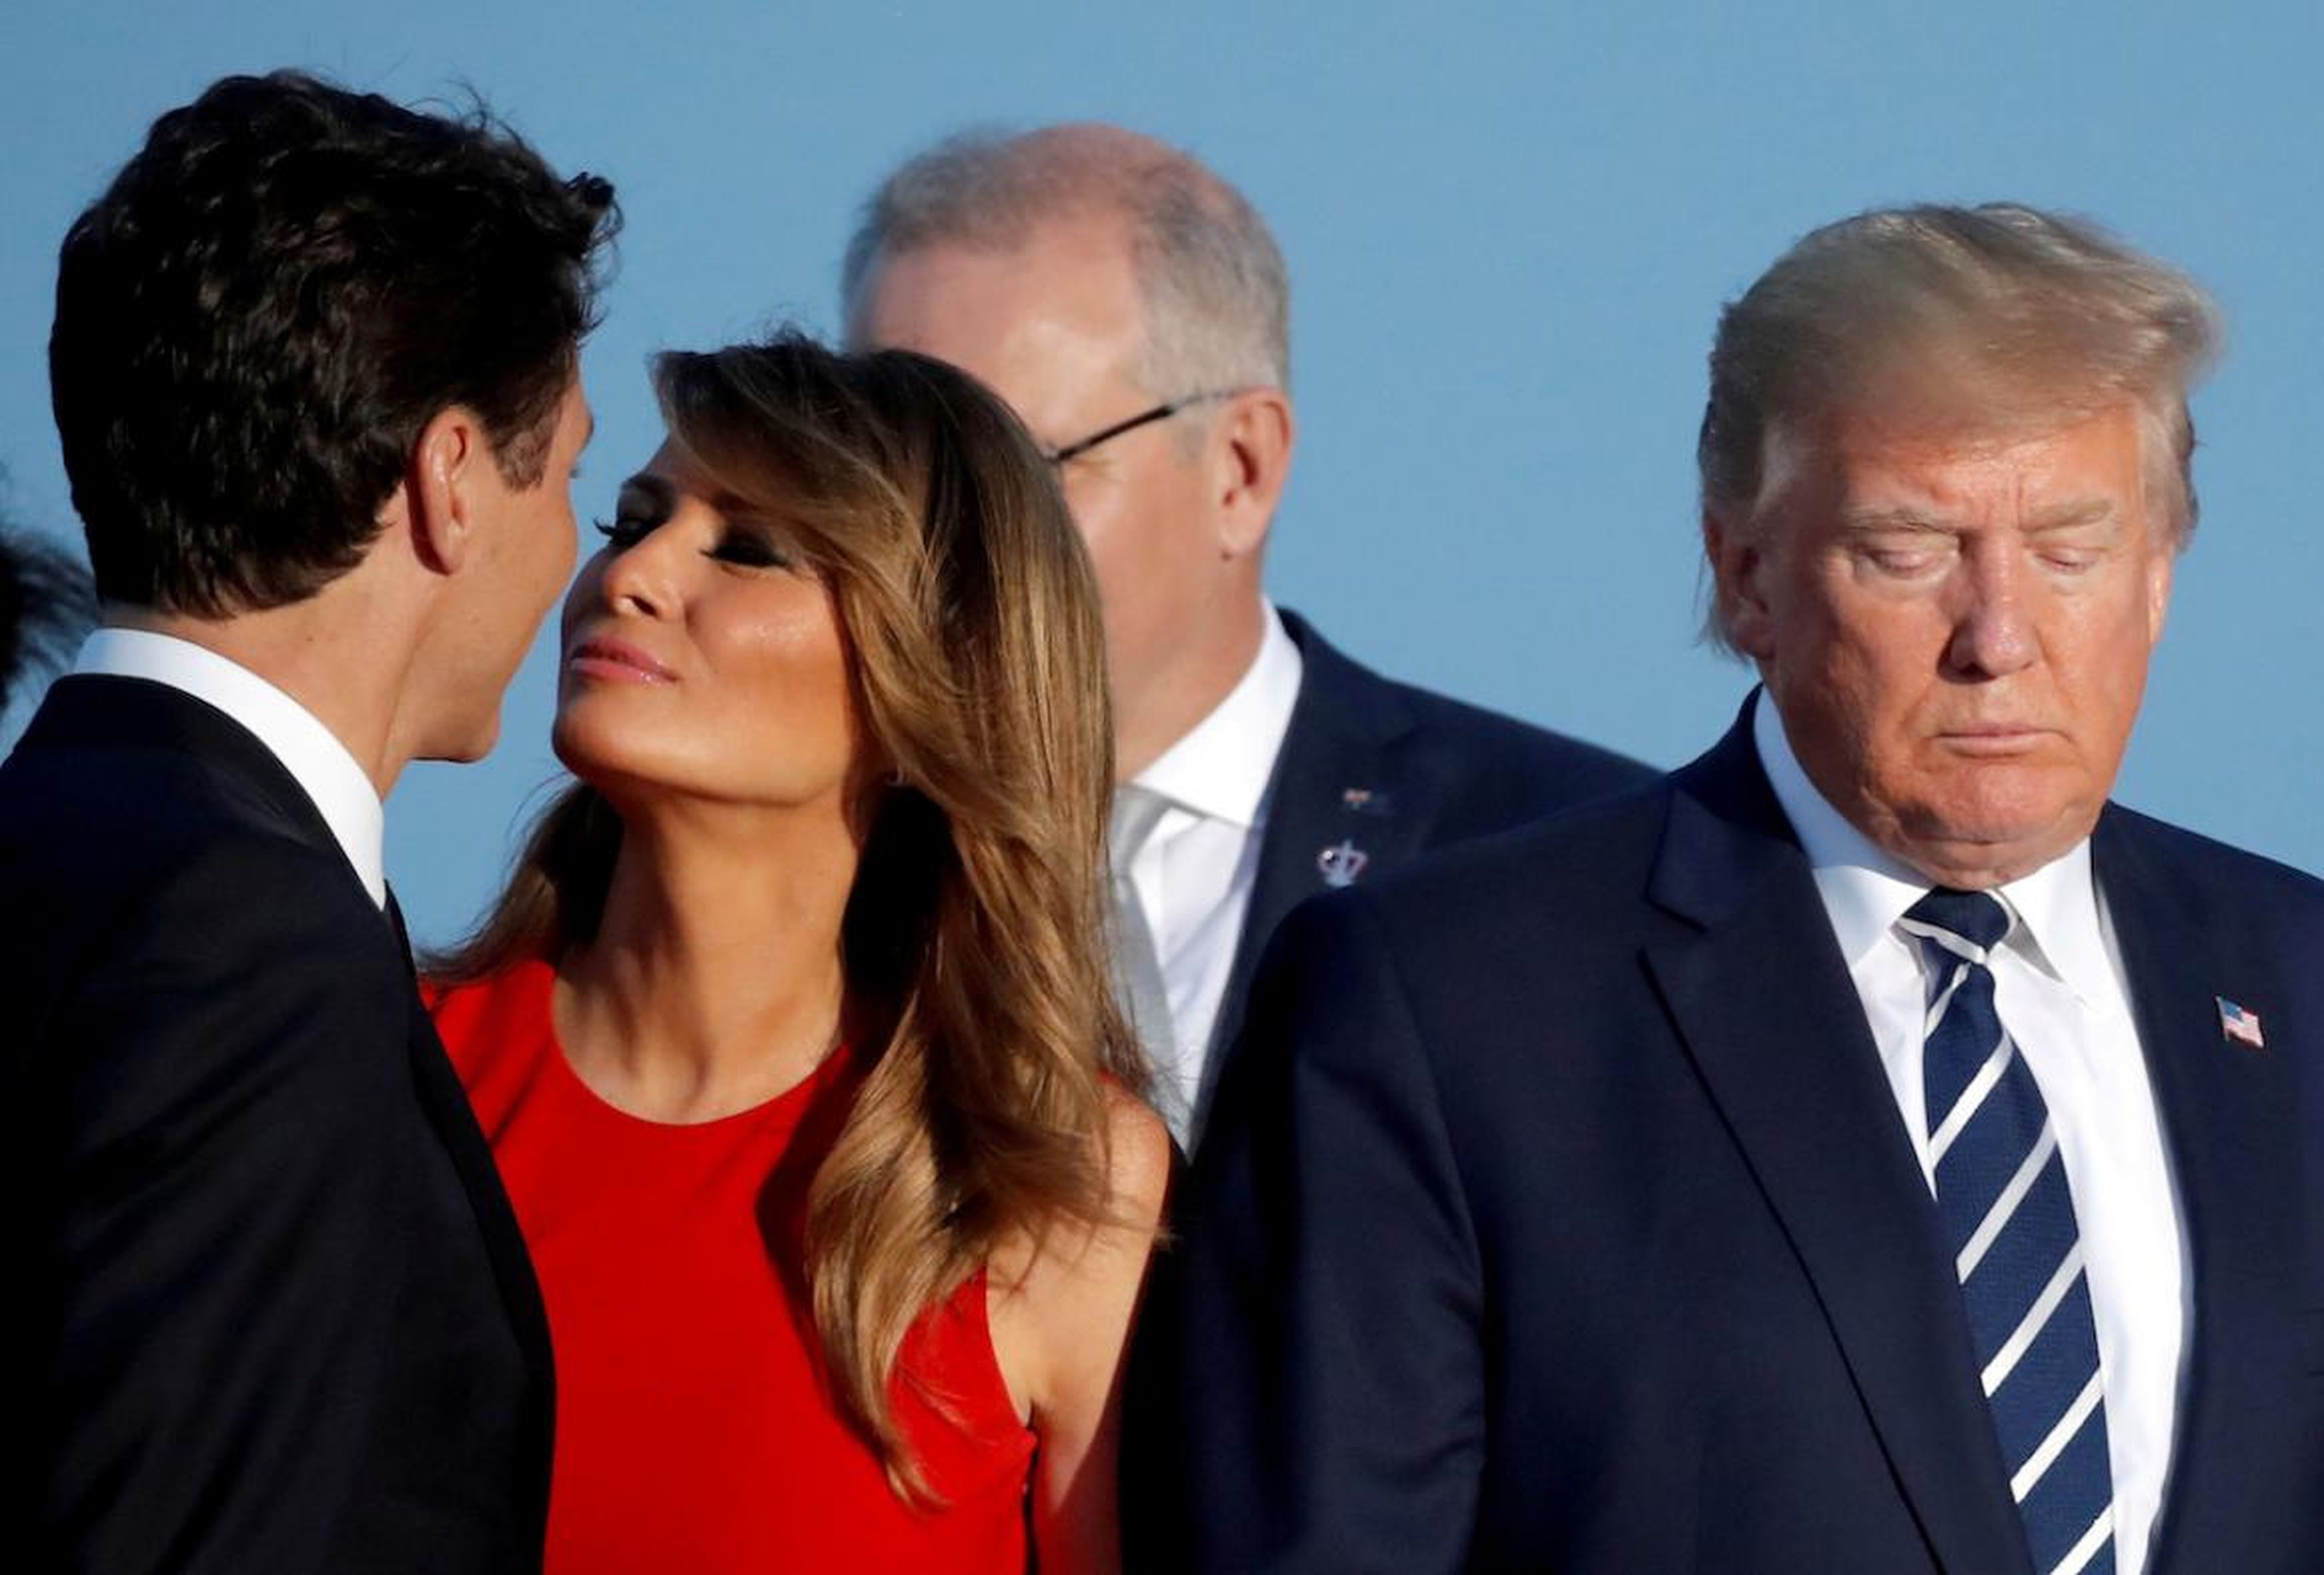 La primera dama Melania Trump besa al primer ministro de Canadá, Justin Trudeau, junto al presidente de los Estados Unidos, Donald Trump, durante una foto con los invitados a la cumbre del G7 en Biarritz, Francia, el 25 de agosto.